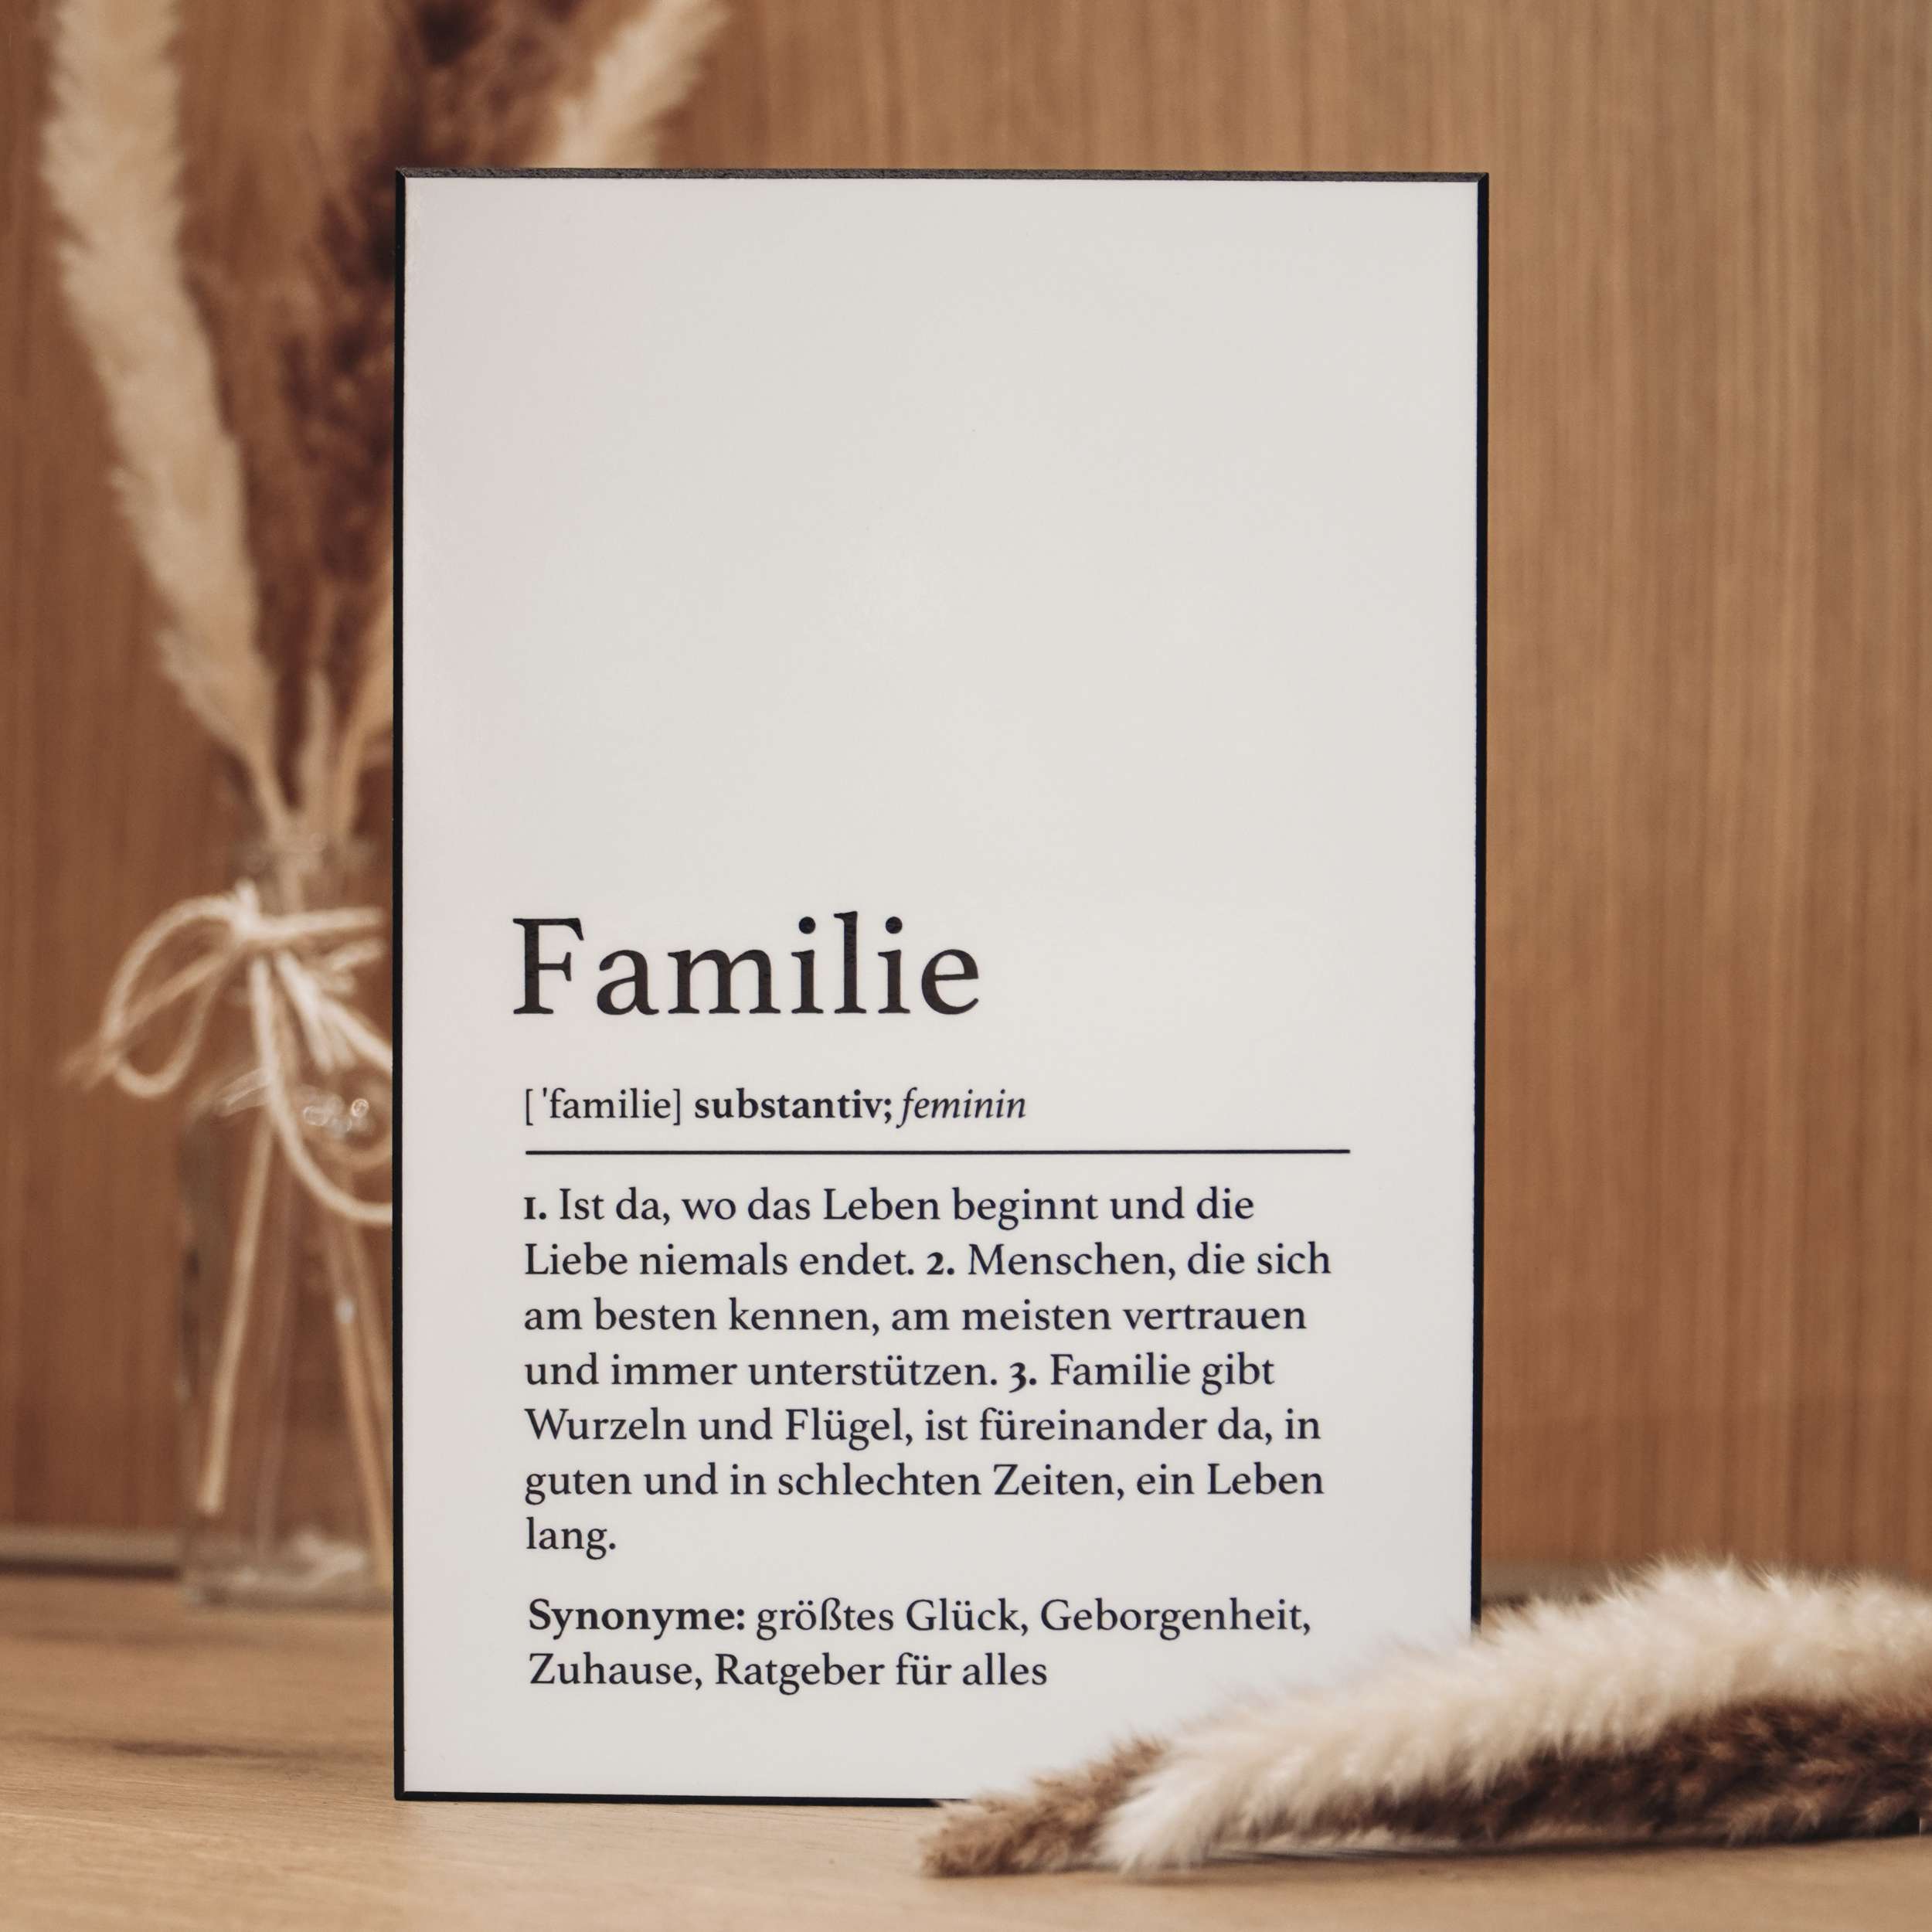 Handgefertigte Definitionstafel „Familie“ aus erstklassigem Material – das ideale Geschenk zur Hochzeit, Geburt und anderen schönen Anlässen.